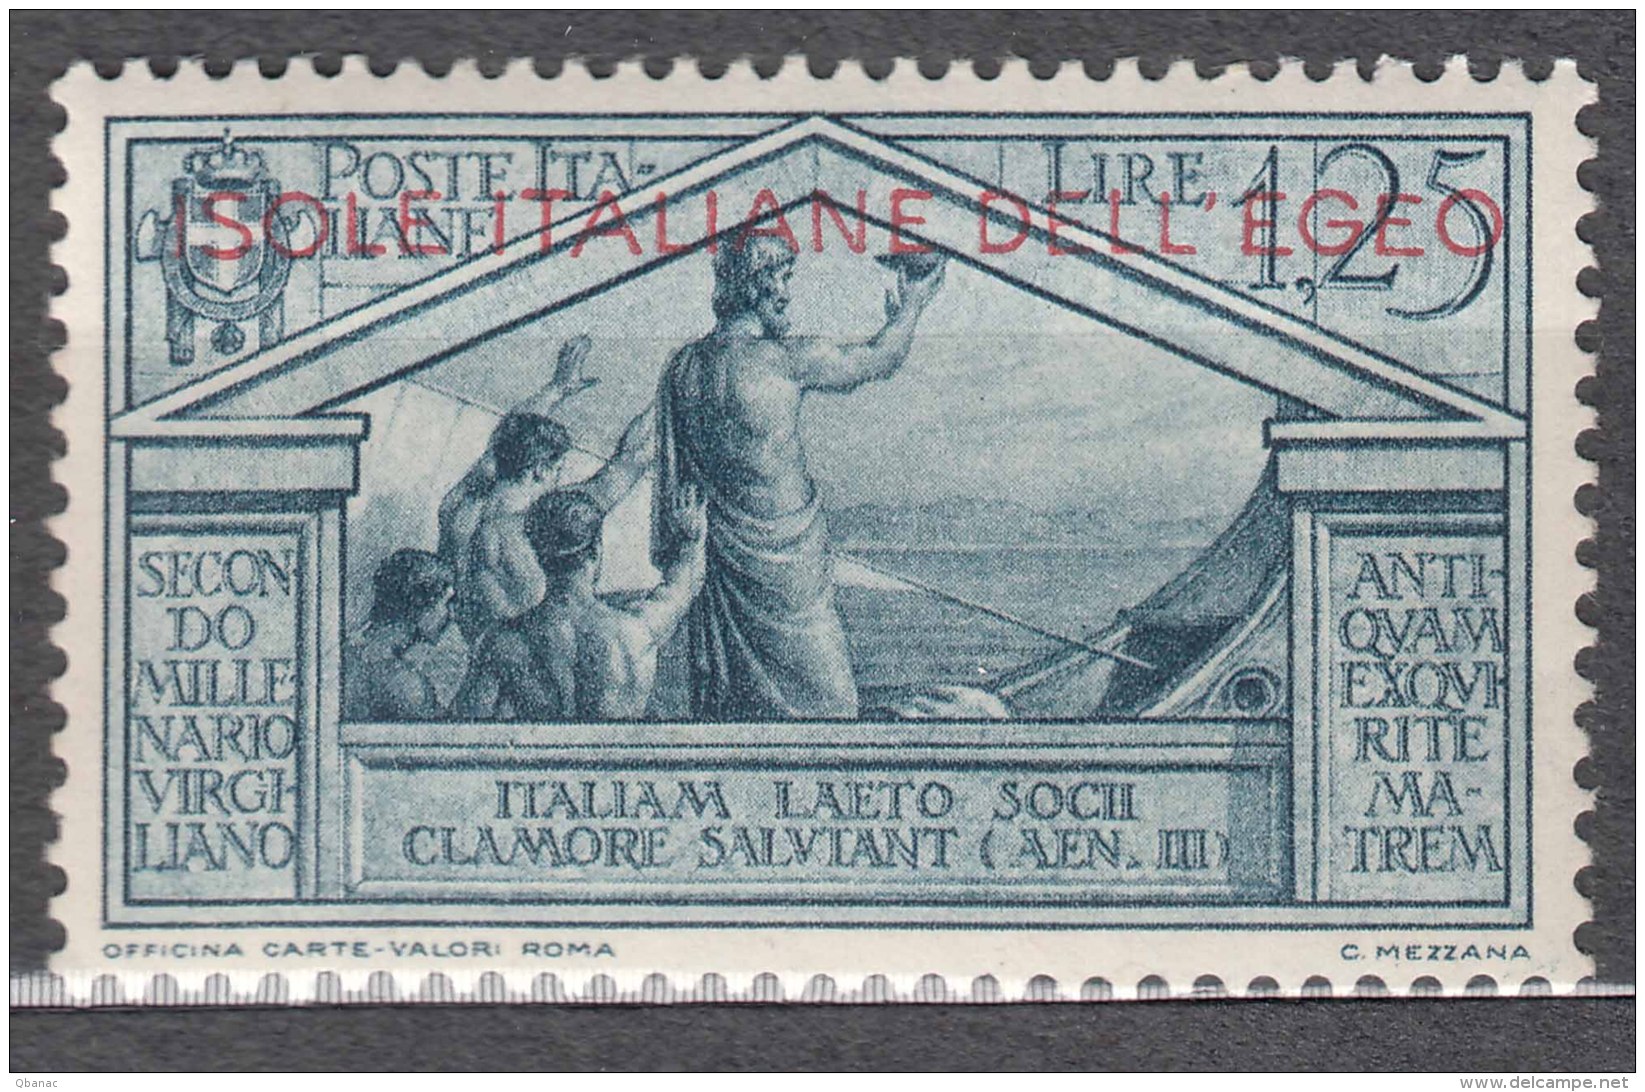 Italy Colonies Aegean Issues, Egeo, 1930 Sassone#27 Mi#49 Mint Hinged - Aegean